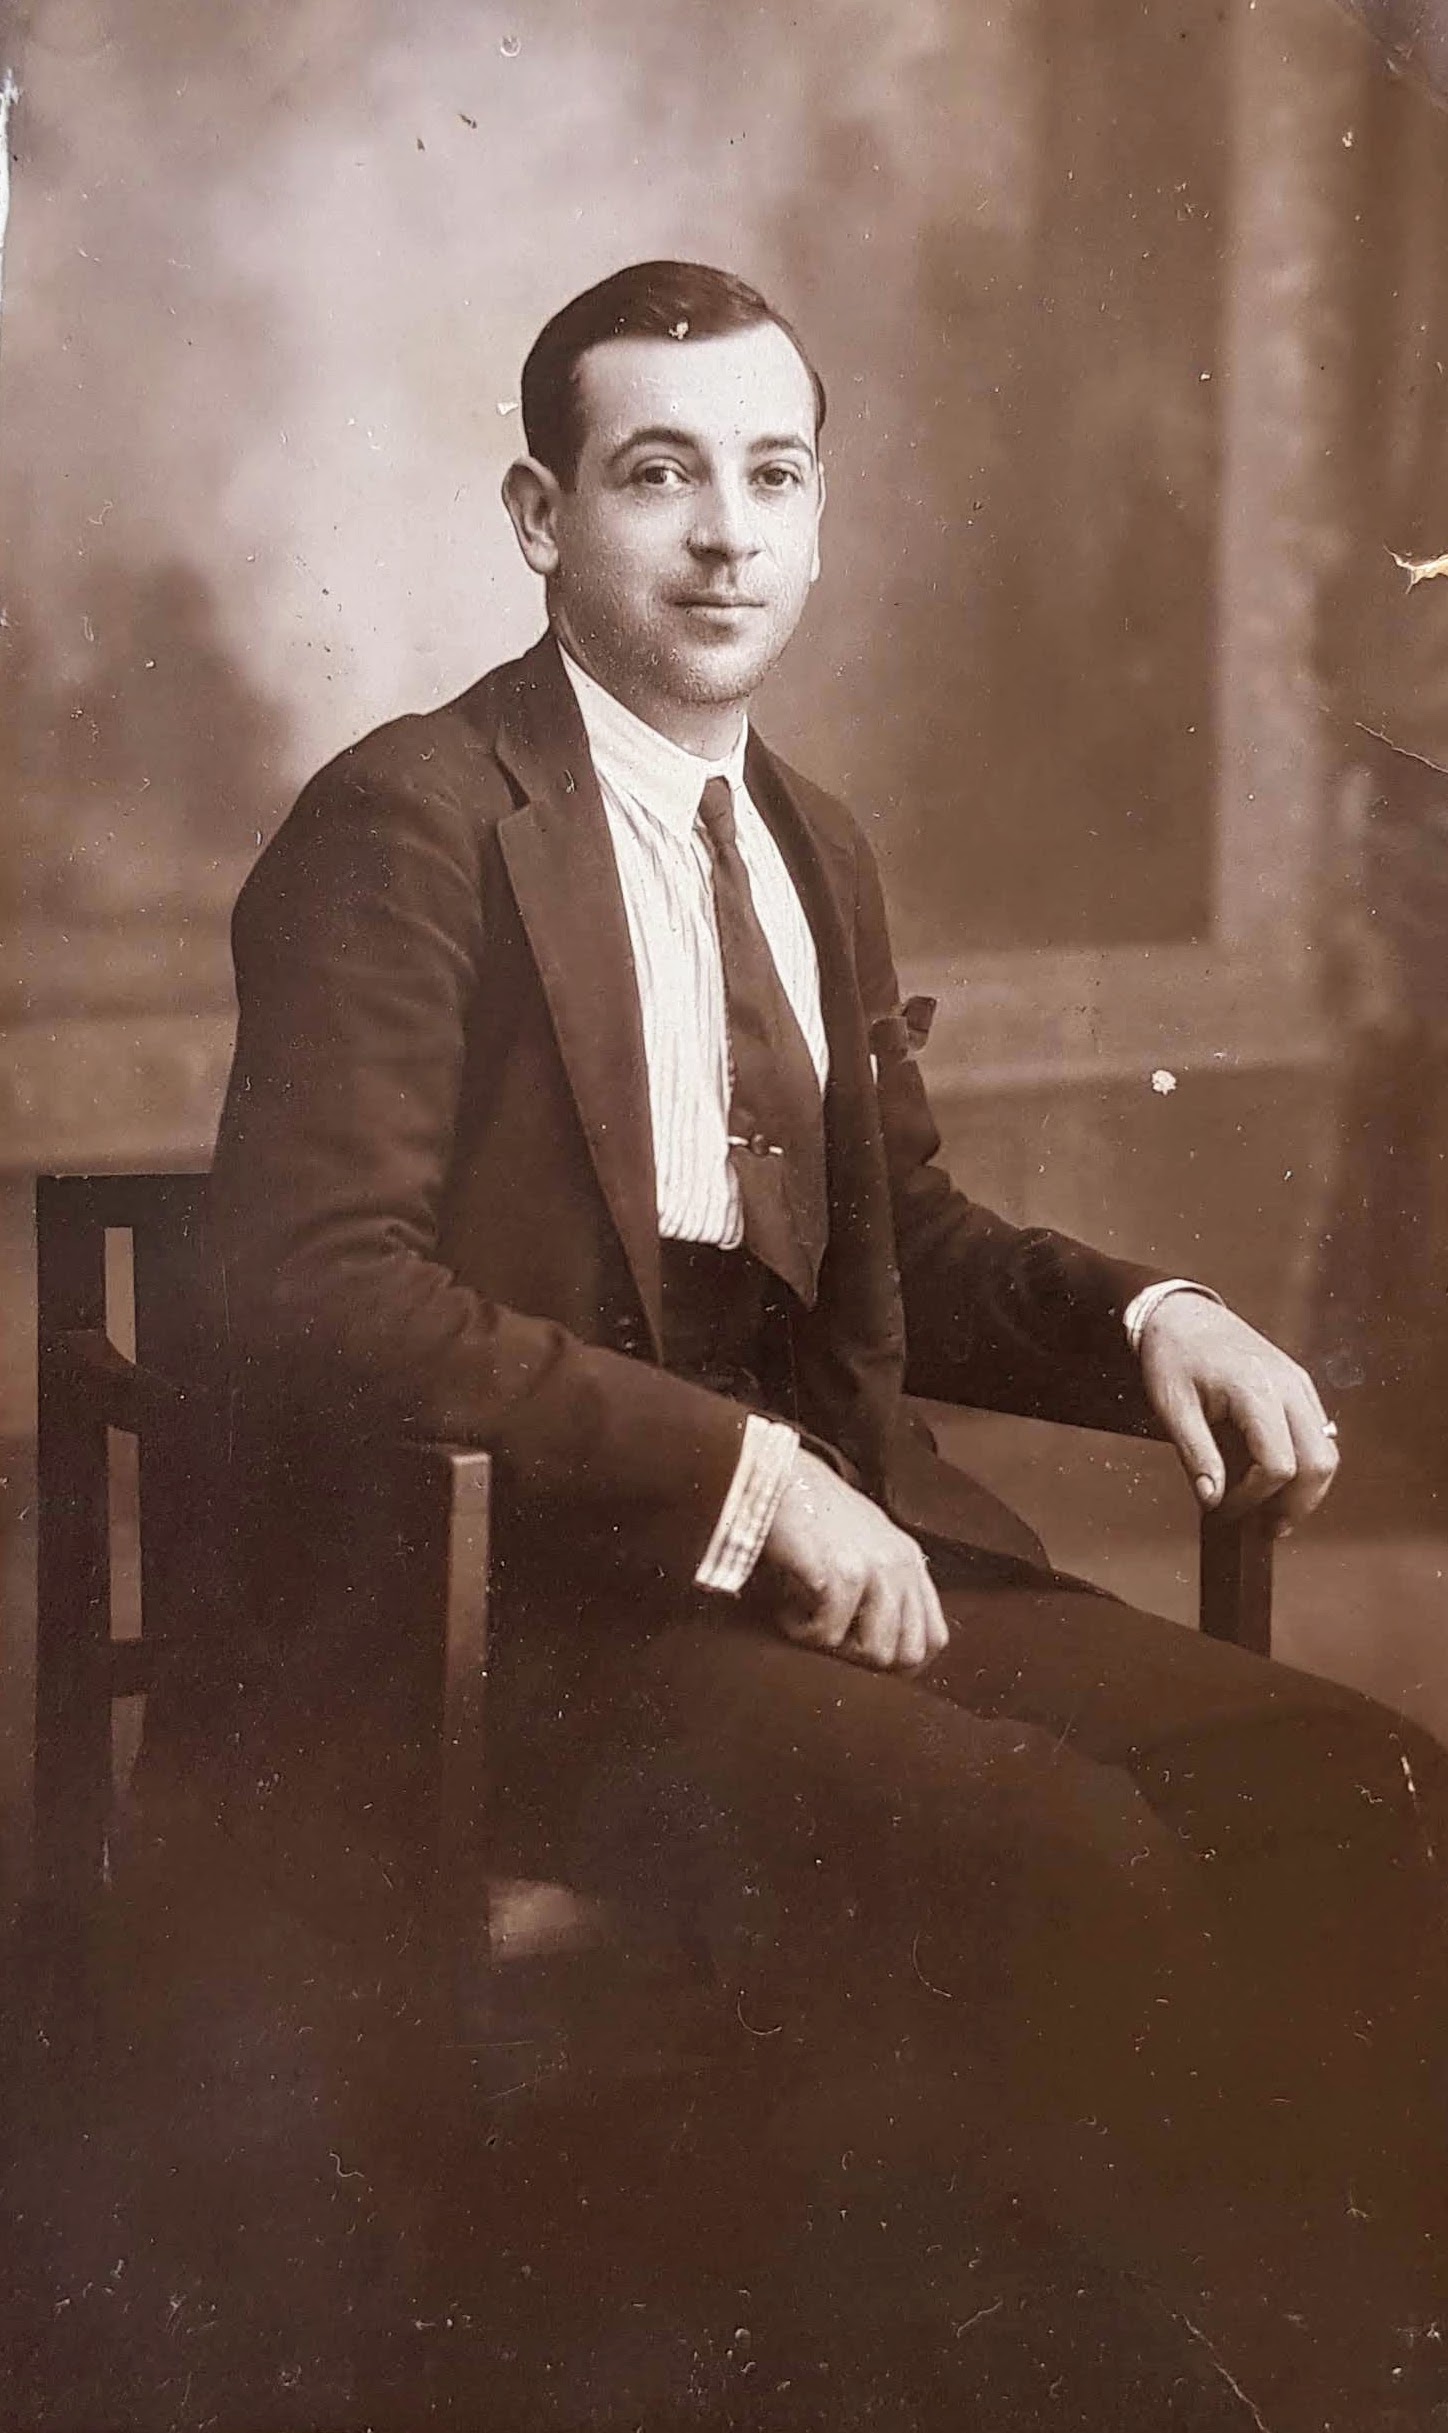 JOSÉ TRUJILLO MORALES (1901-1967)